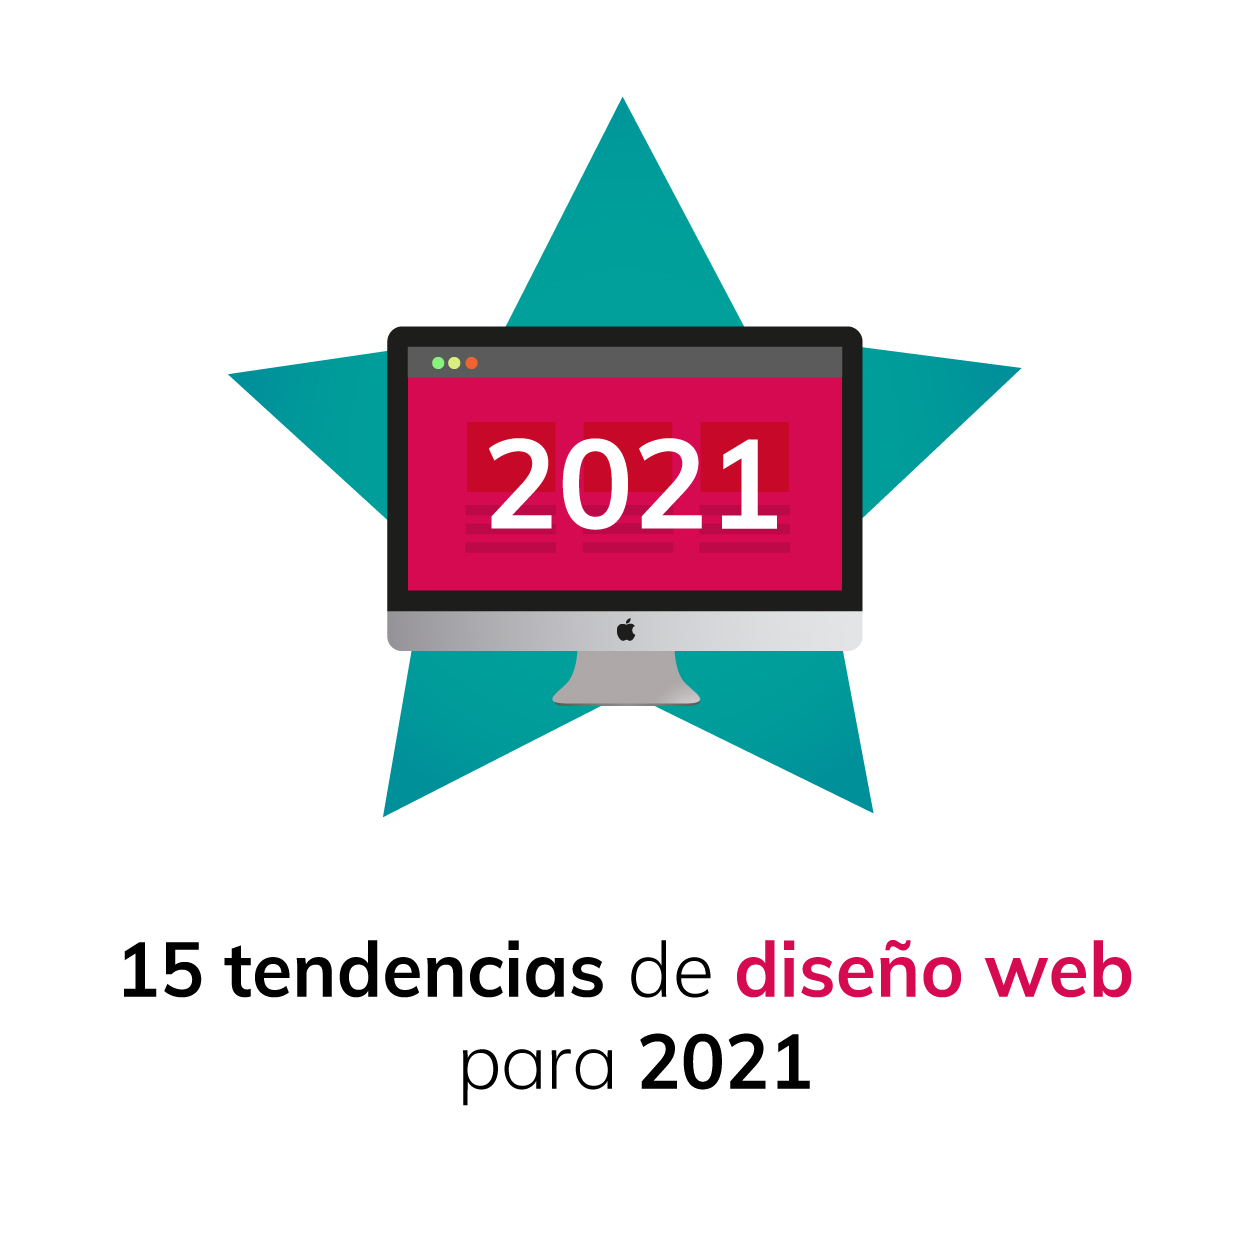 15 tendencias de diseño web para 2021